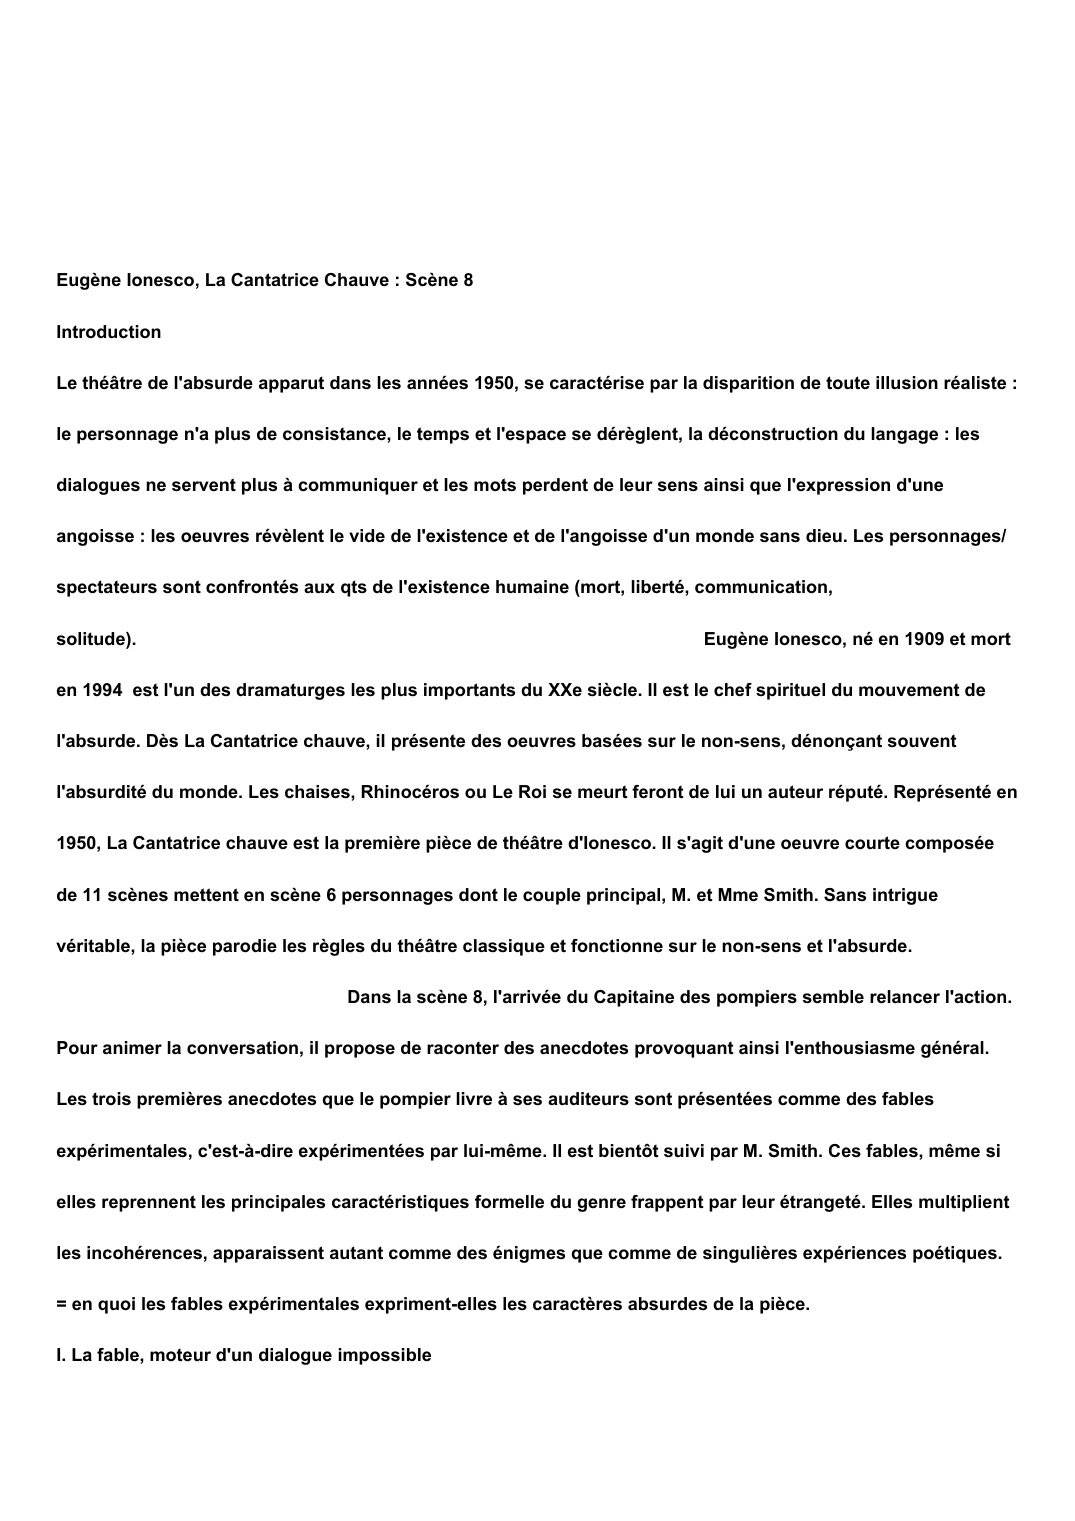 Prévisualisation du document Eugène Ionesco La cantatrice chauve scène 8